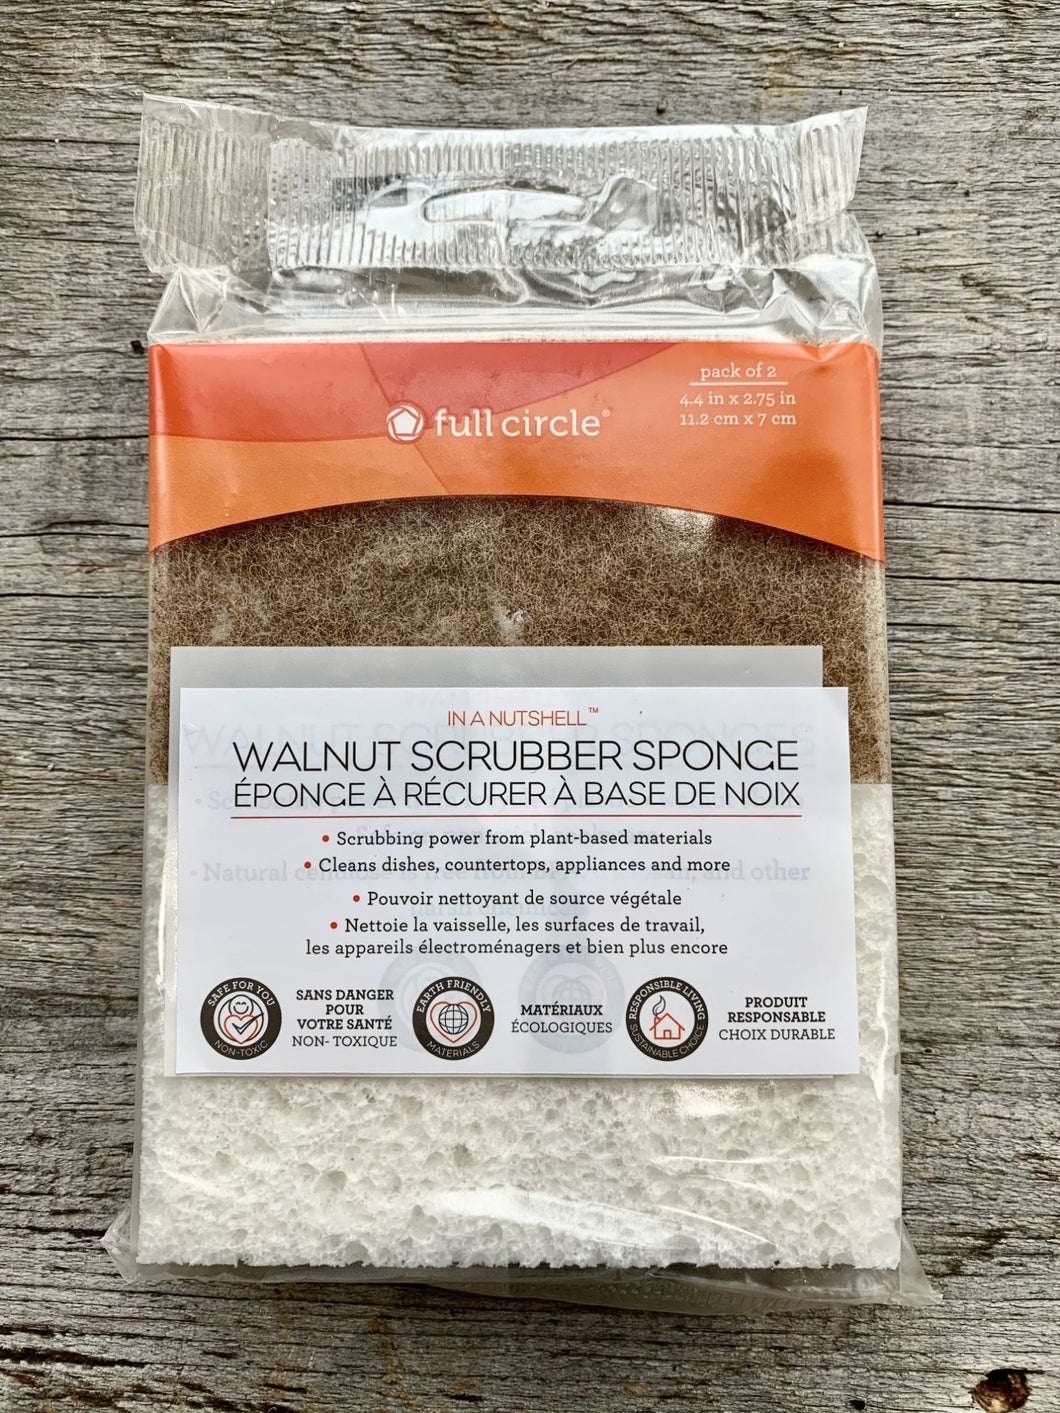 Walnut Scrubber Sponge 2-Pack